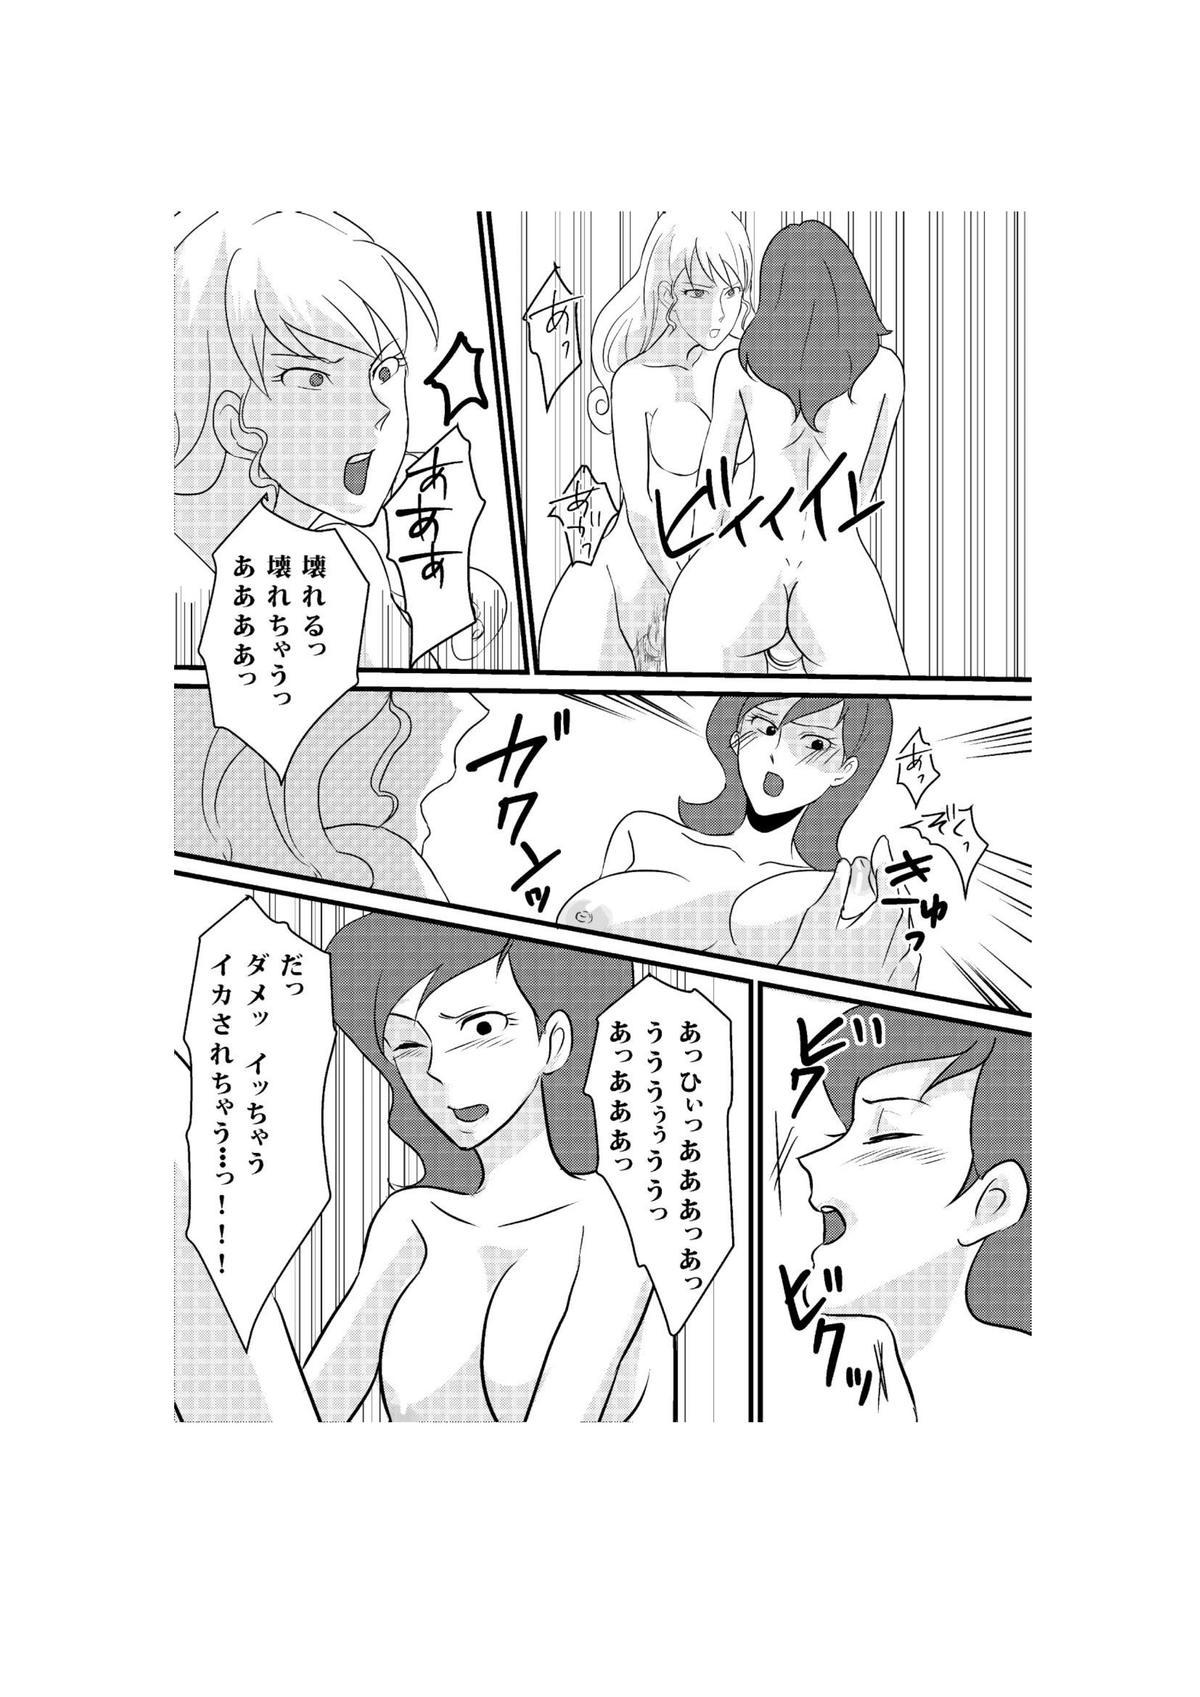 Spycam Fushi no Kyouten Ureta Onna no Tatakai - Fujiko VS Emmanuelle - Lupin iii Blackcocks - Page 28